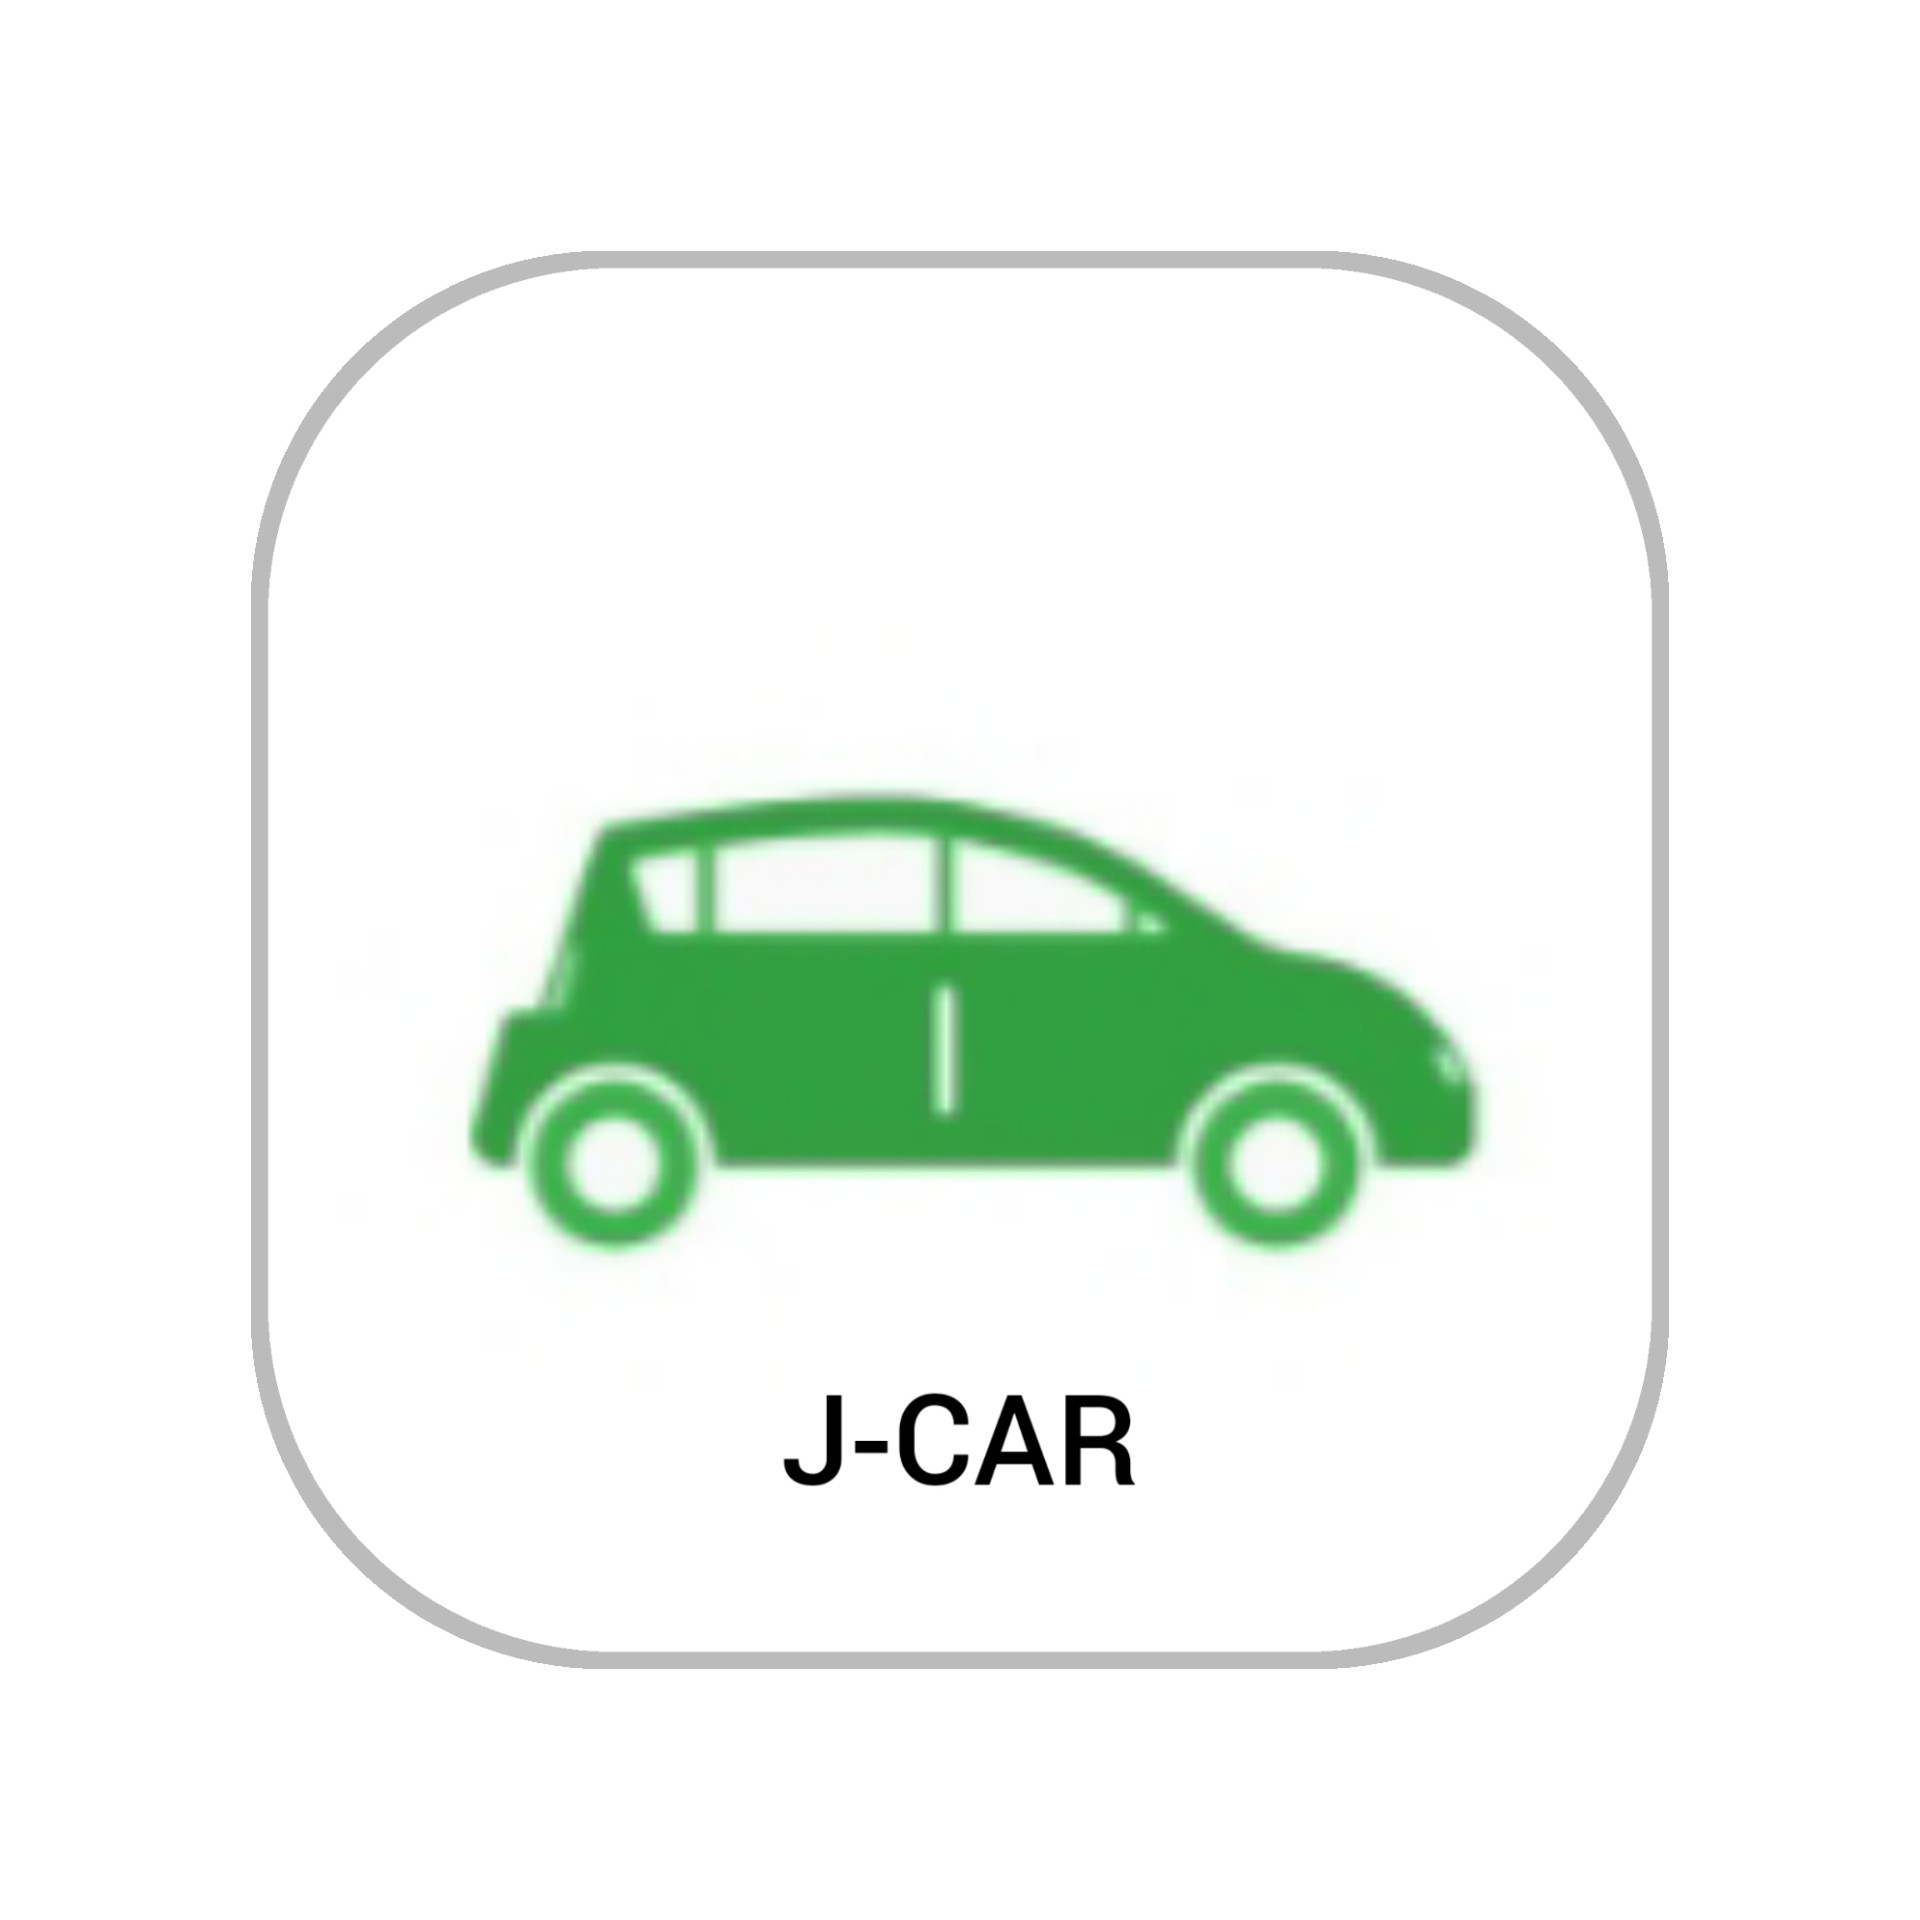 J-CAR